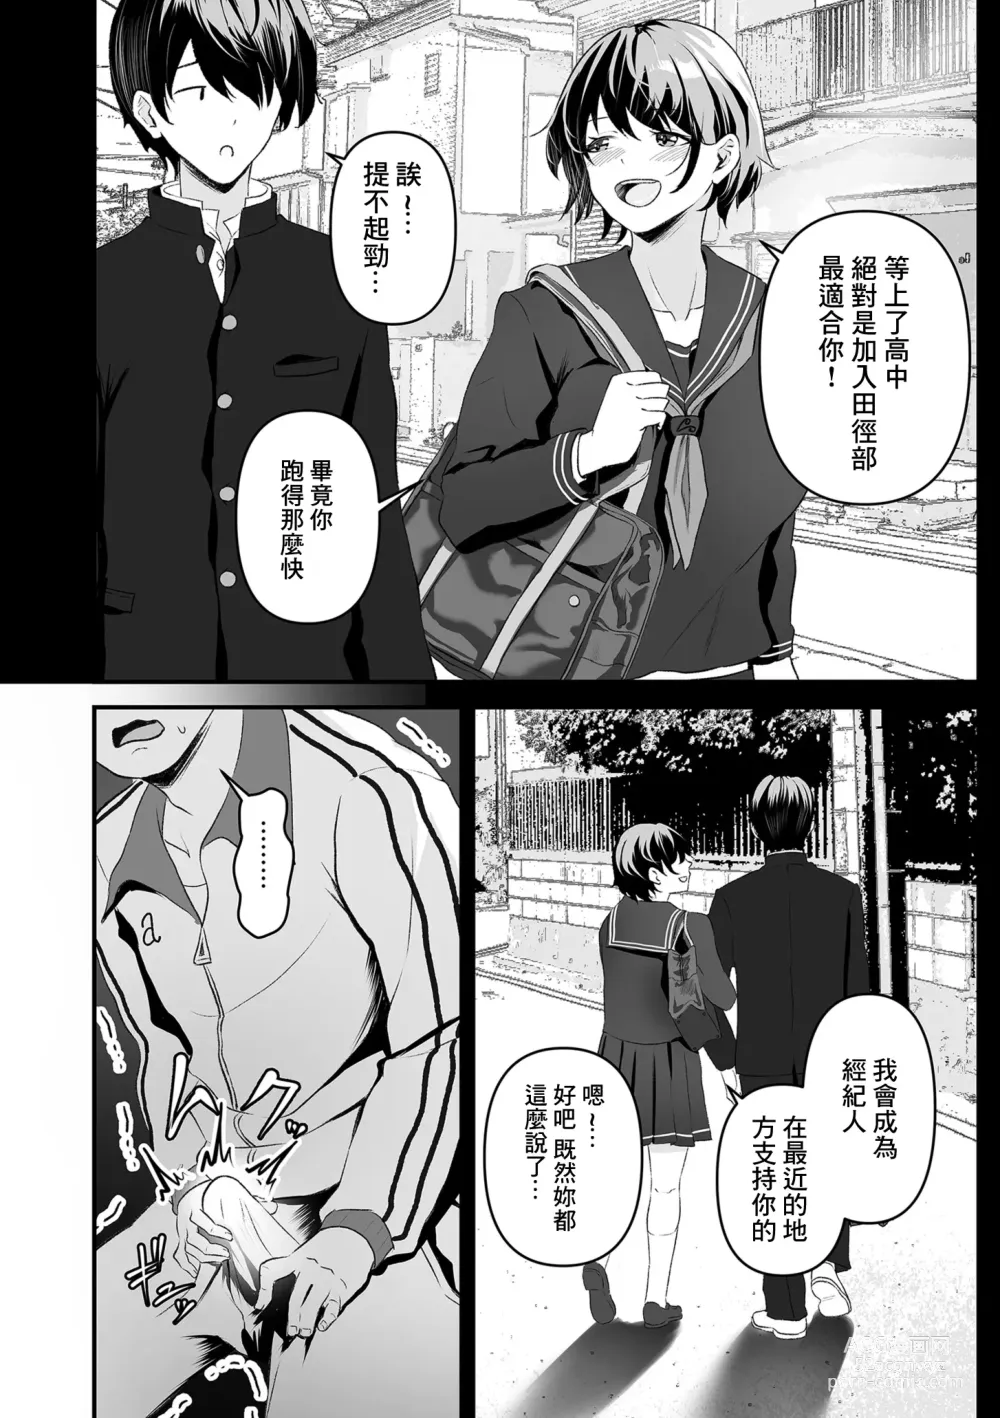 Page 6 of manga 集訓手淫對象